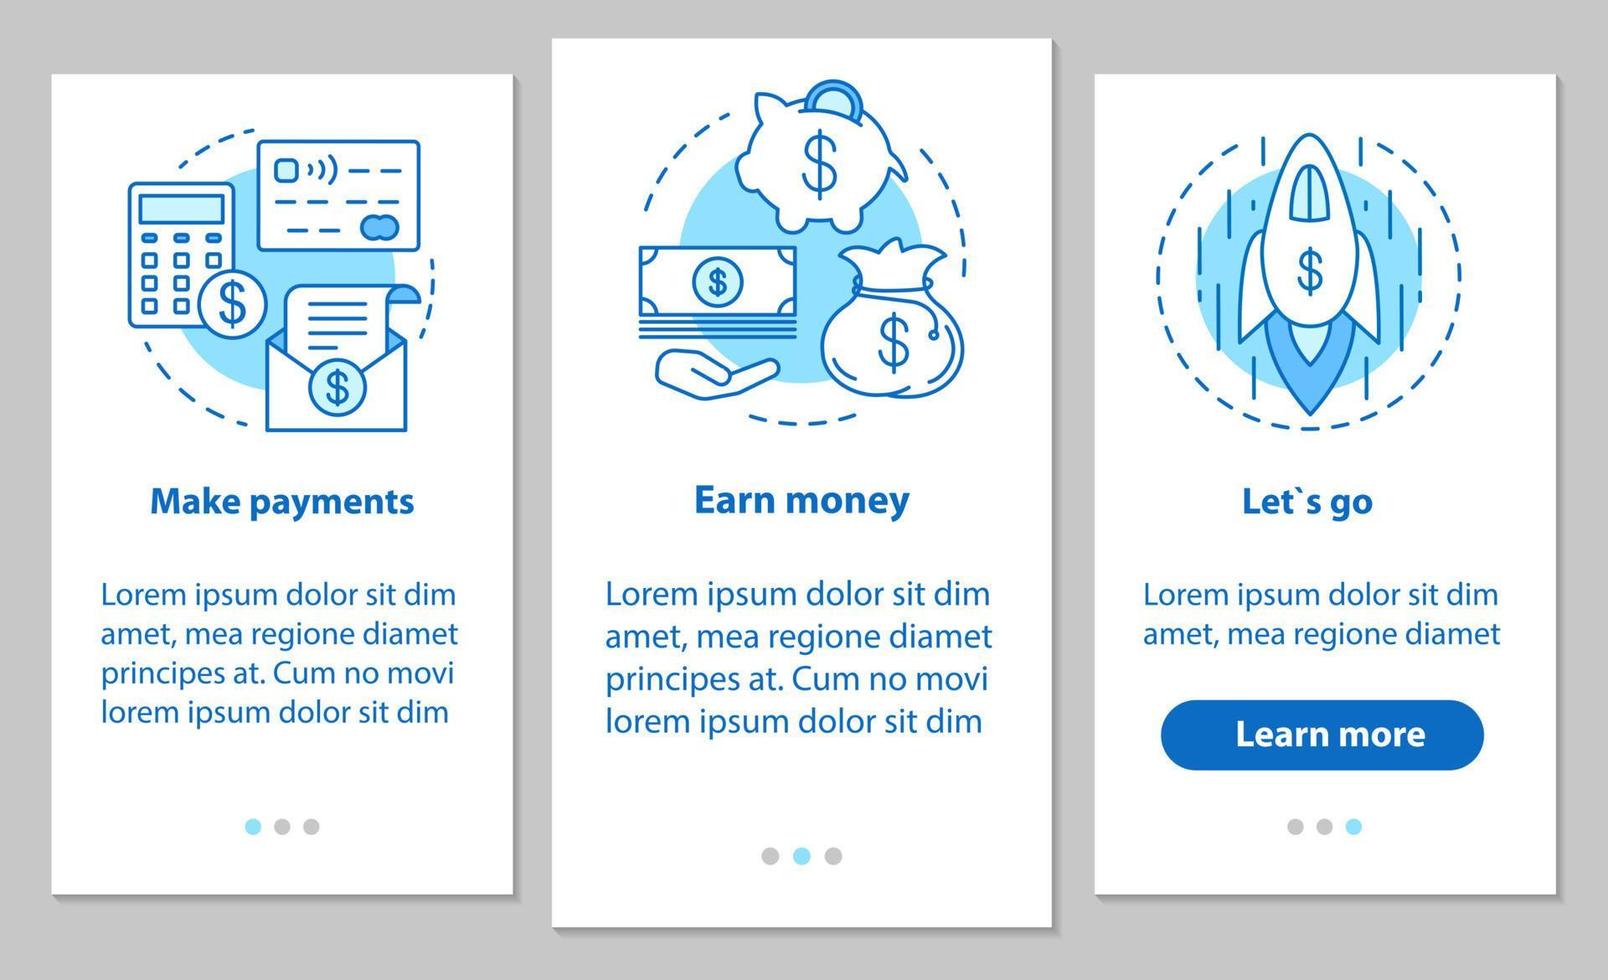 sviluppo del business onboarding schermata della pagina dell'app mobile con concetti lineari. servizi finanziari. effettuare pagamenti, guadagnare denaro, avviare startup. istruzioni per i passaggi. ux, ui, illustrazioni vettoriali gui